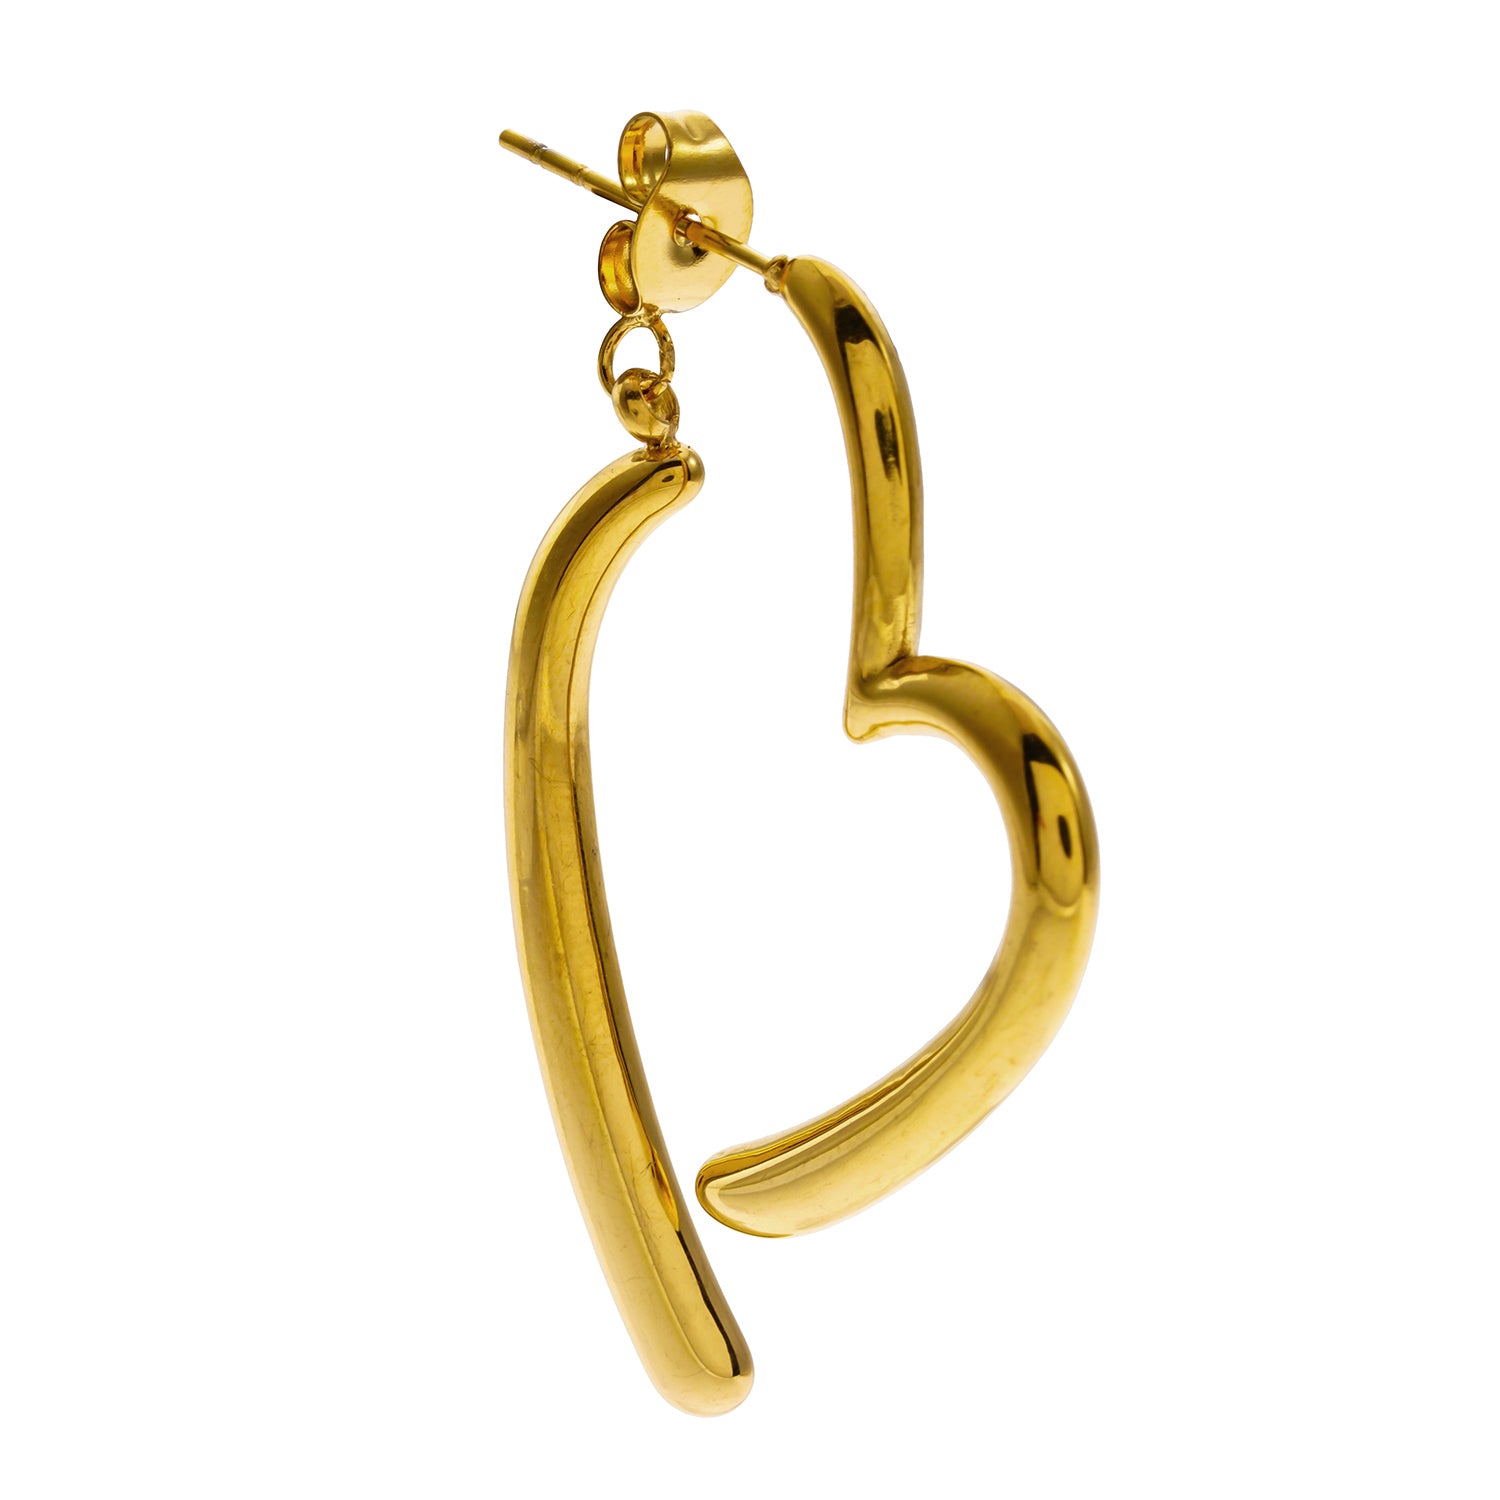 Style MOMOKA 0187: Abstract Heart Shaped Detachable Hoop Earrings.